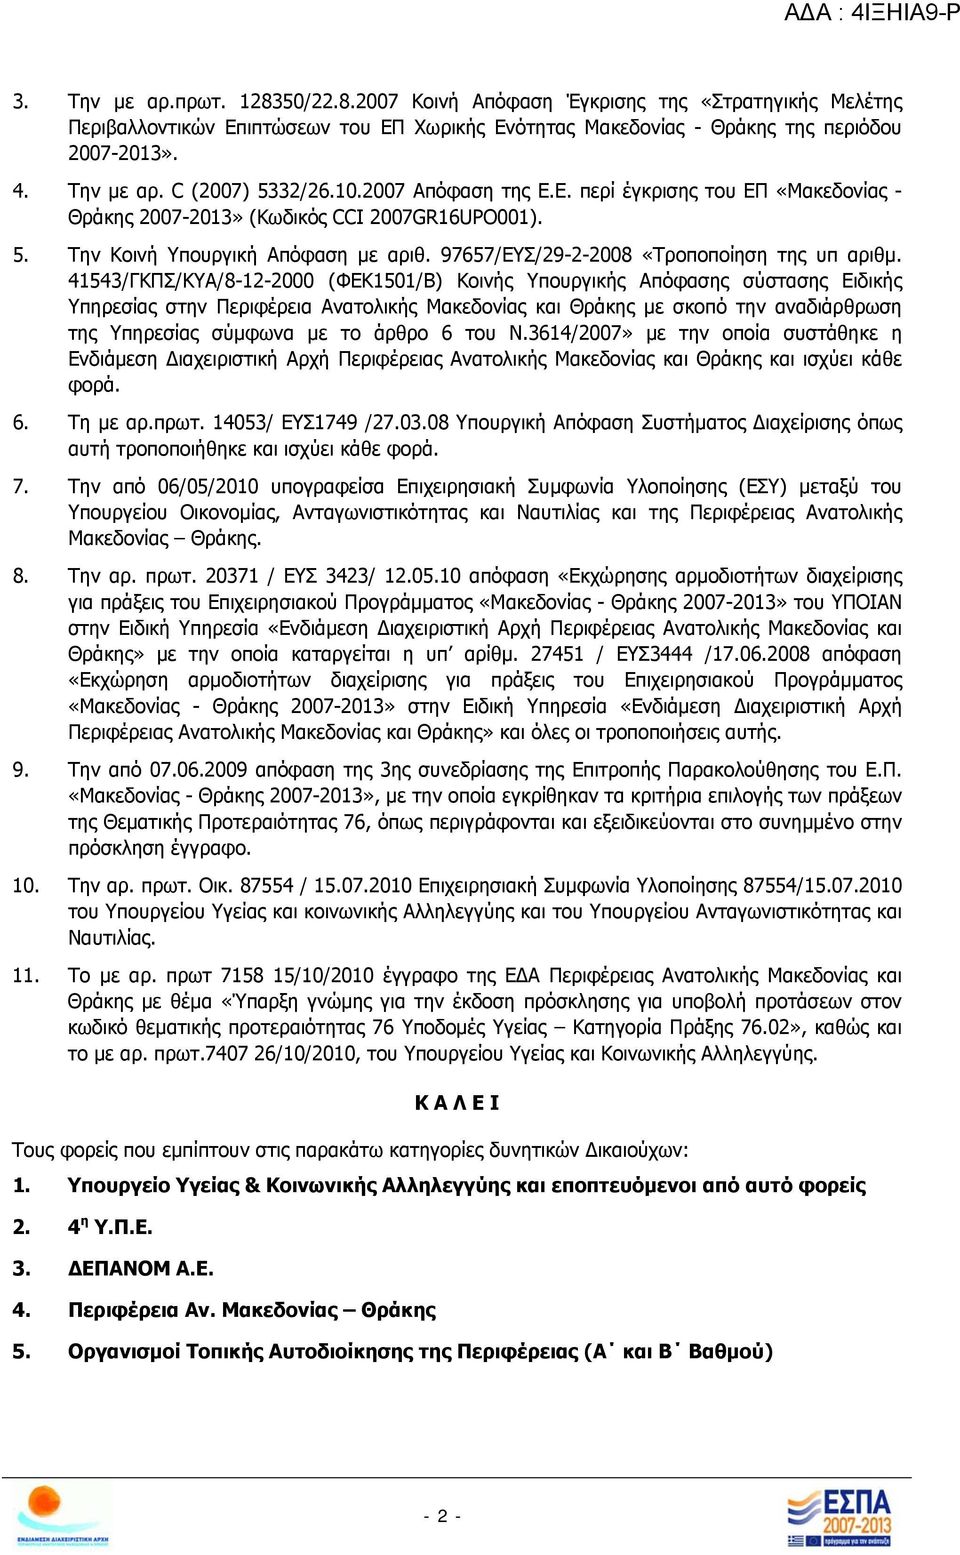 41543/ΓΚΠΣ/ΚΥΑ/8-12-2000 (ΦΕΚ1501/Β) Κοινής Υπουργικής Απόφασης σύστασης Ειδικής Υπηρεσίας στην Περιφέρεια Ανατολικής Μακεδονίας και Θράκης με σκοπό την αναδιάρθρωση της Υπηρεσίας σύμφωνα με το άρθρο